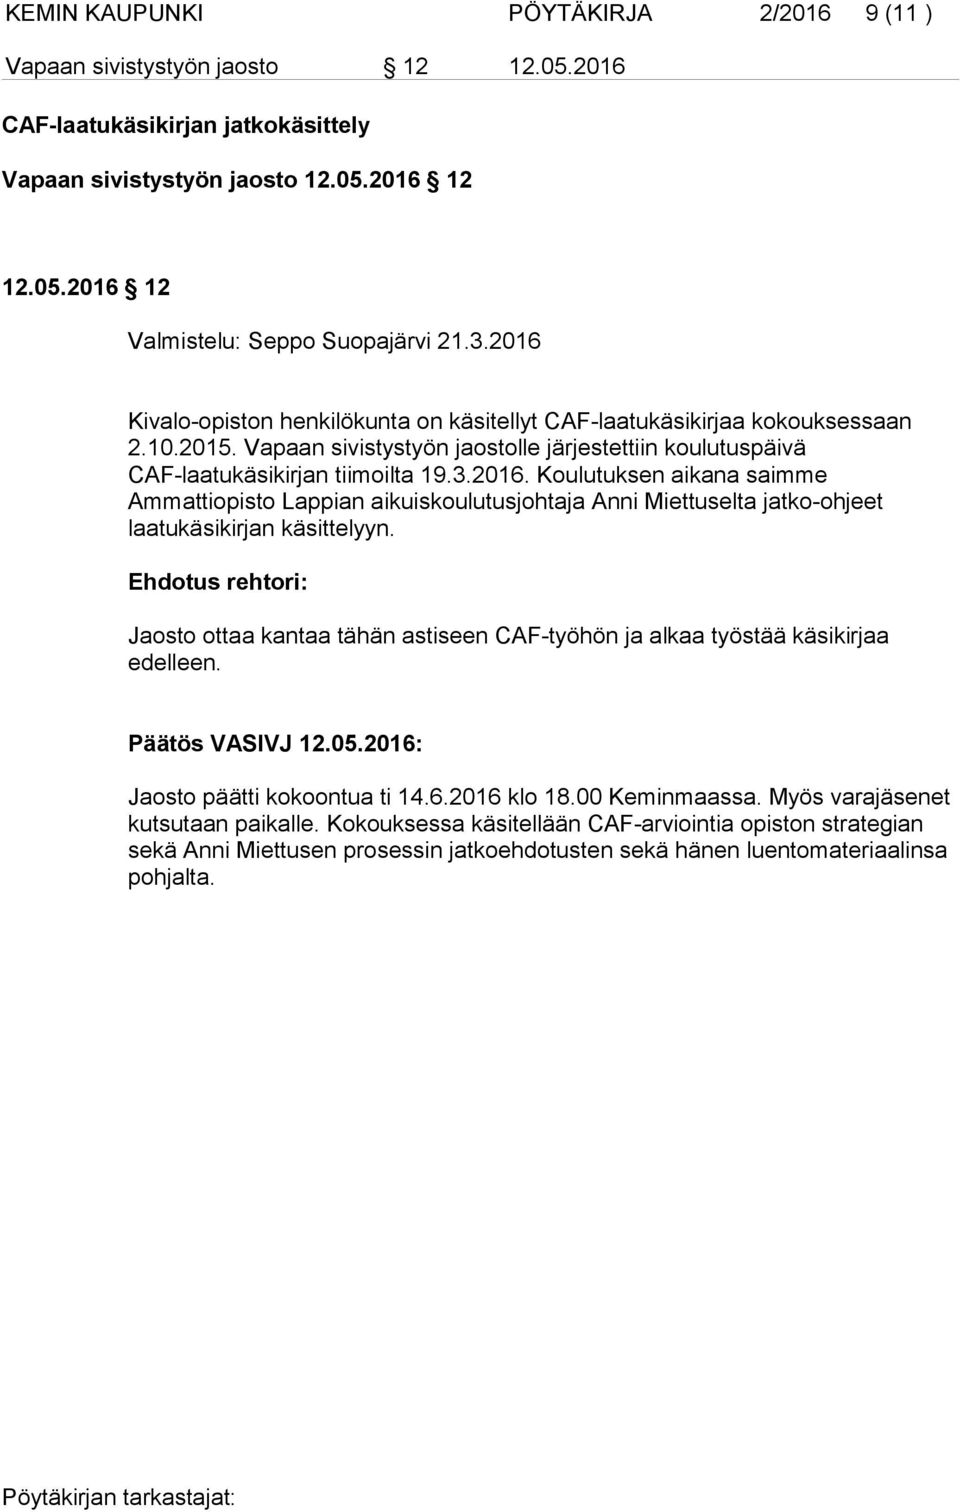 Ehdotus rehtori: Jaosto ottaa kantaa tähän astiseen CAF-työhön ja alkaa työstää käsikirjaa edelleen. Päätös VASIVJ 12.05.2016: Jaosto päätti kokoontua ti 14.6.2016 klo 18.00 Keminmaassa.